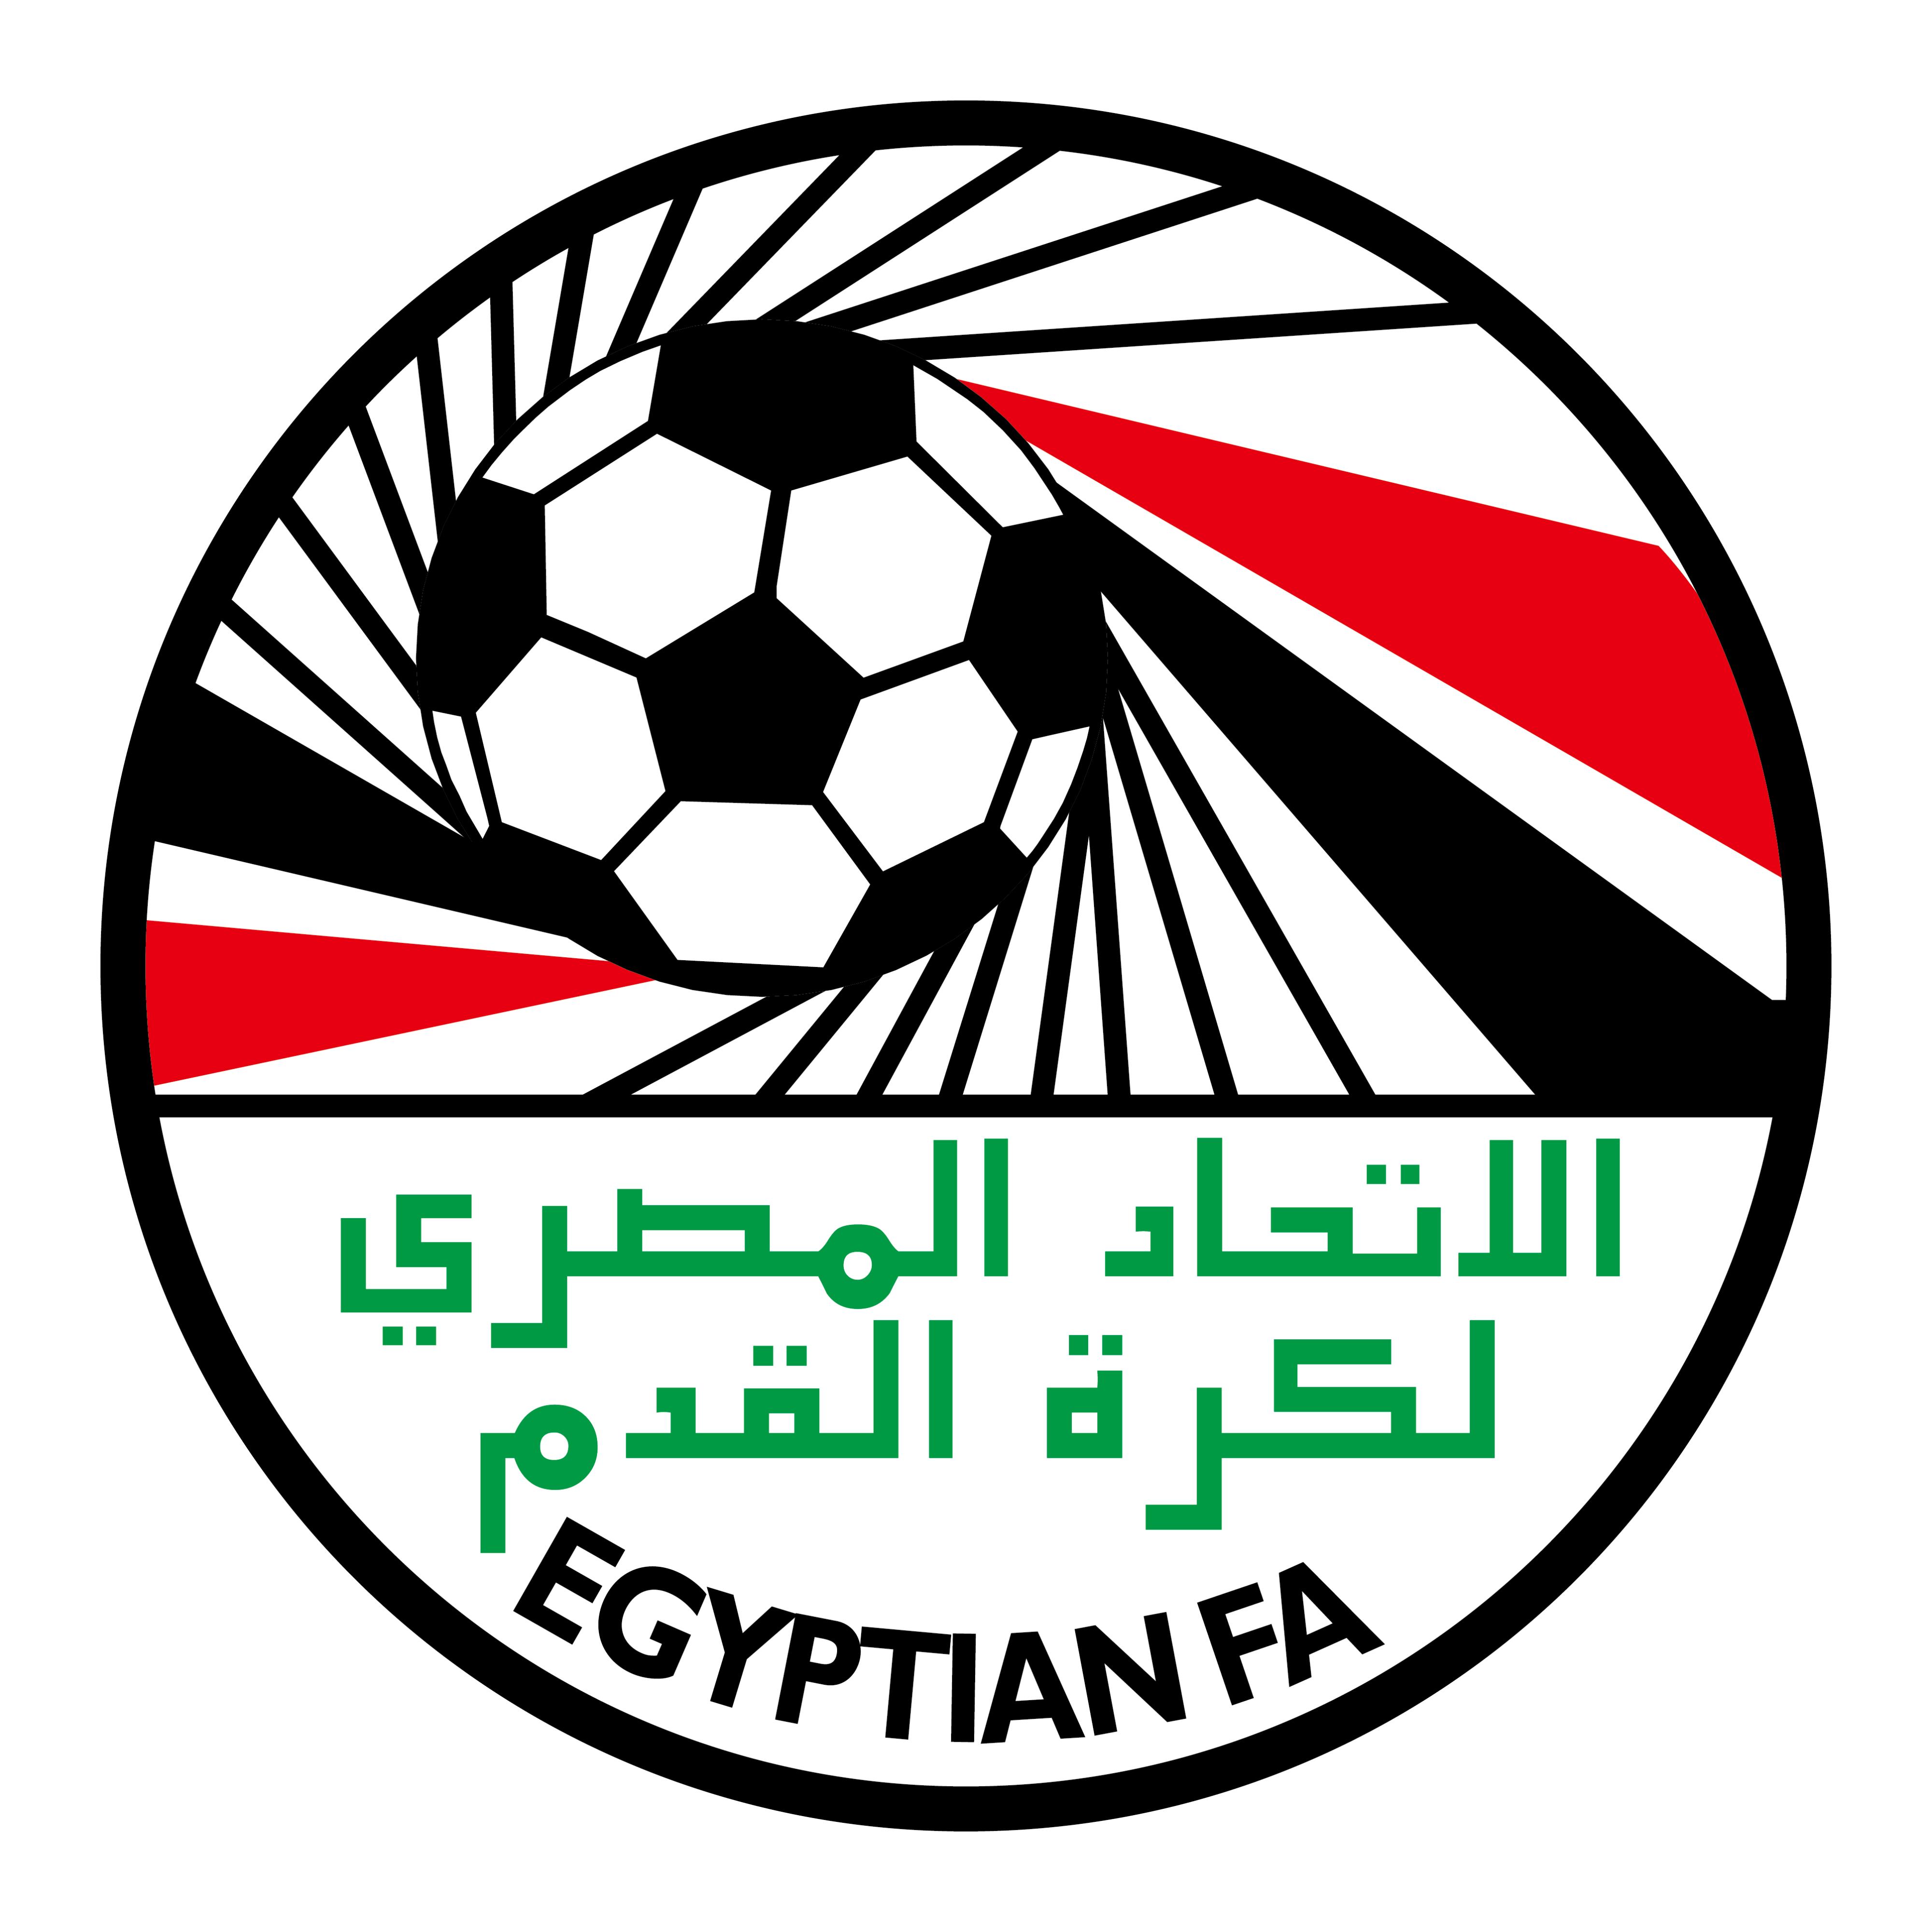 埃及国家男子足球队